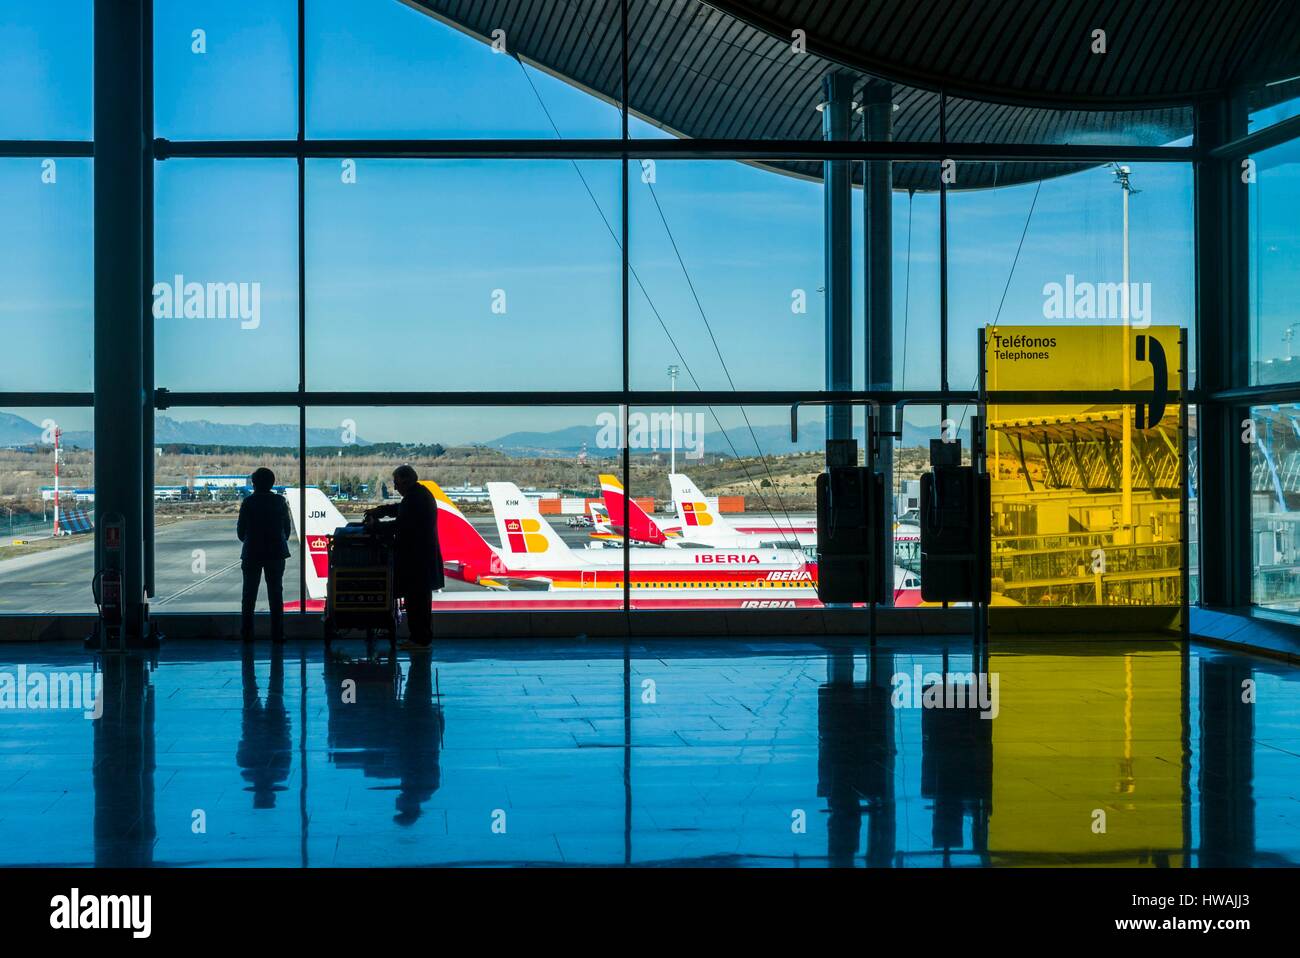 Espagne, Madrid, Adolfo Suarez l'aéroport de Madrid-Barajas, silhouettes à la fenêtre de l'aéroport Banque D'Images